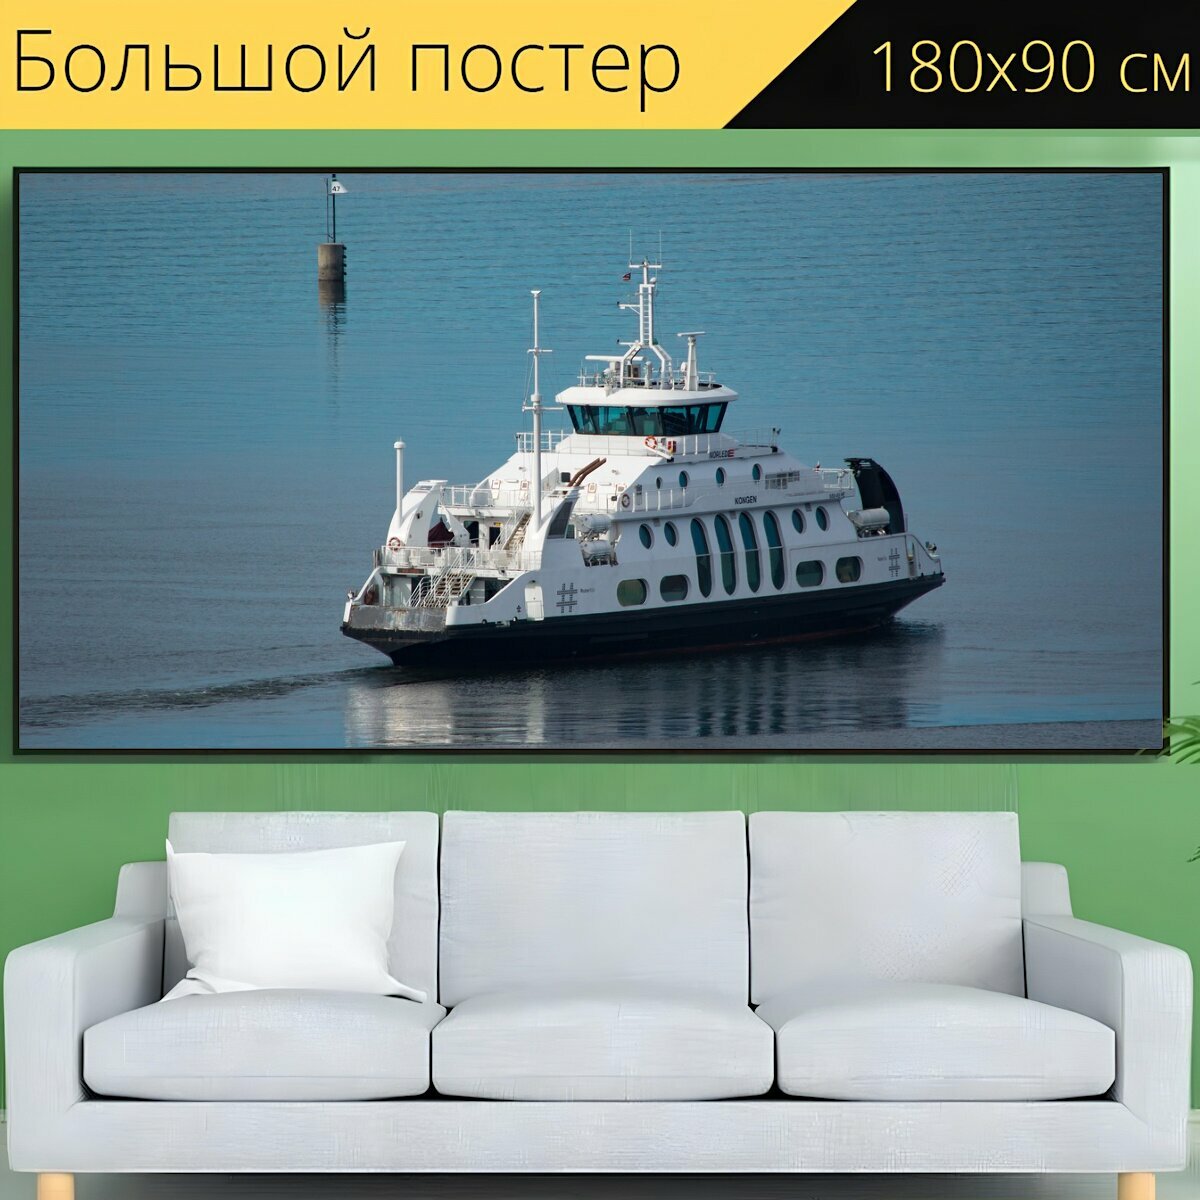 Большой постер "Лодка, судно, море" 180 x 90 см. для интерьера